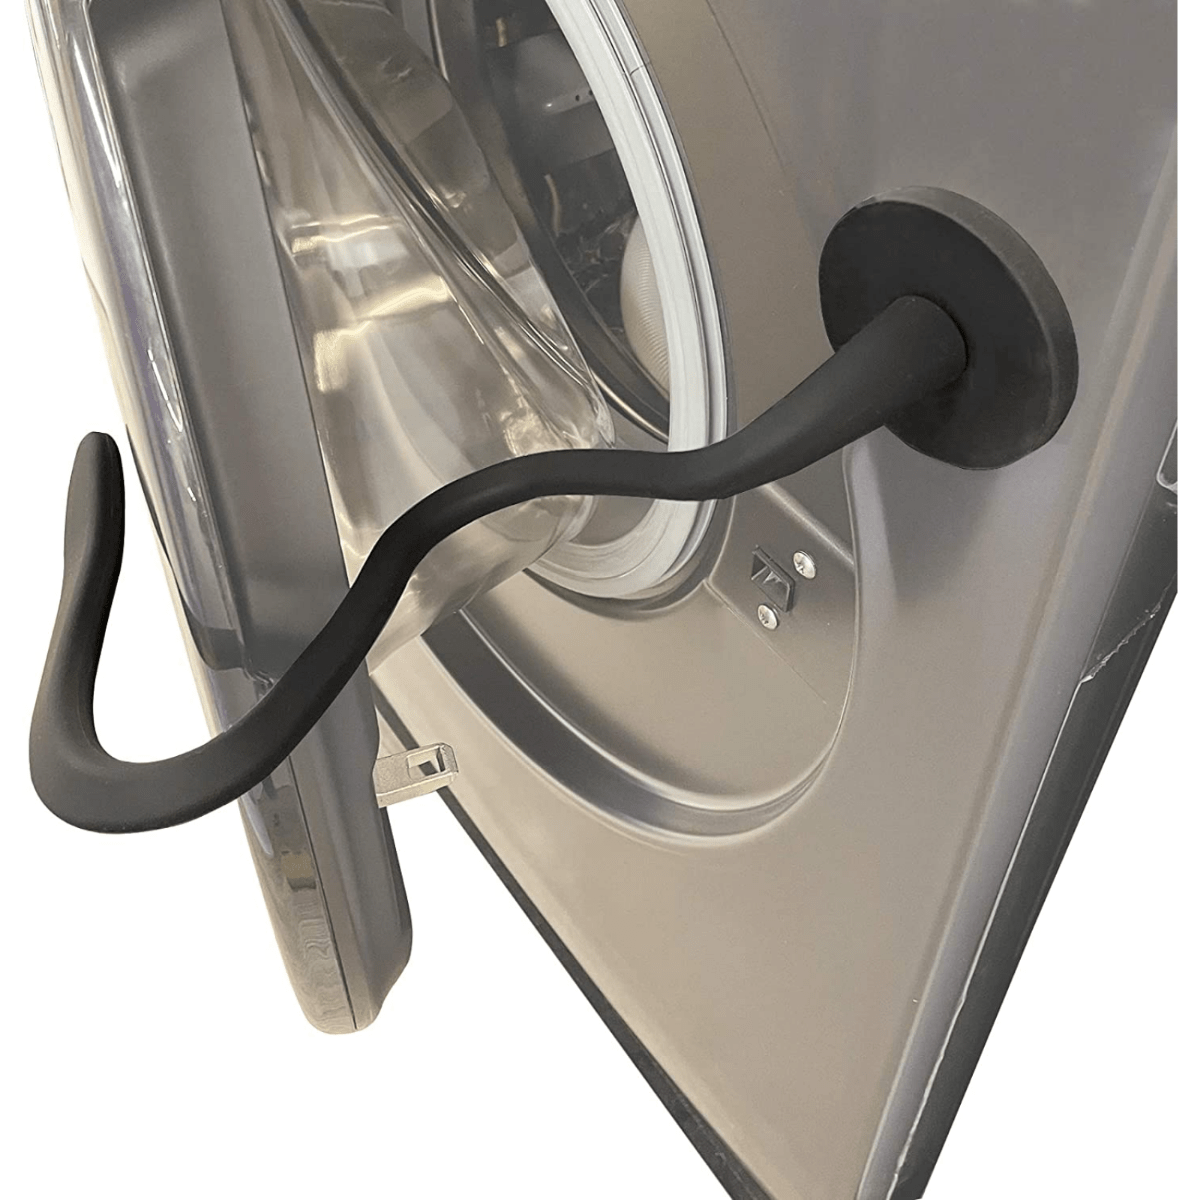 magnetic front load washer door prop keep washer door open